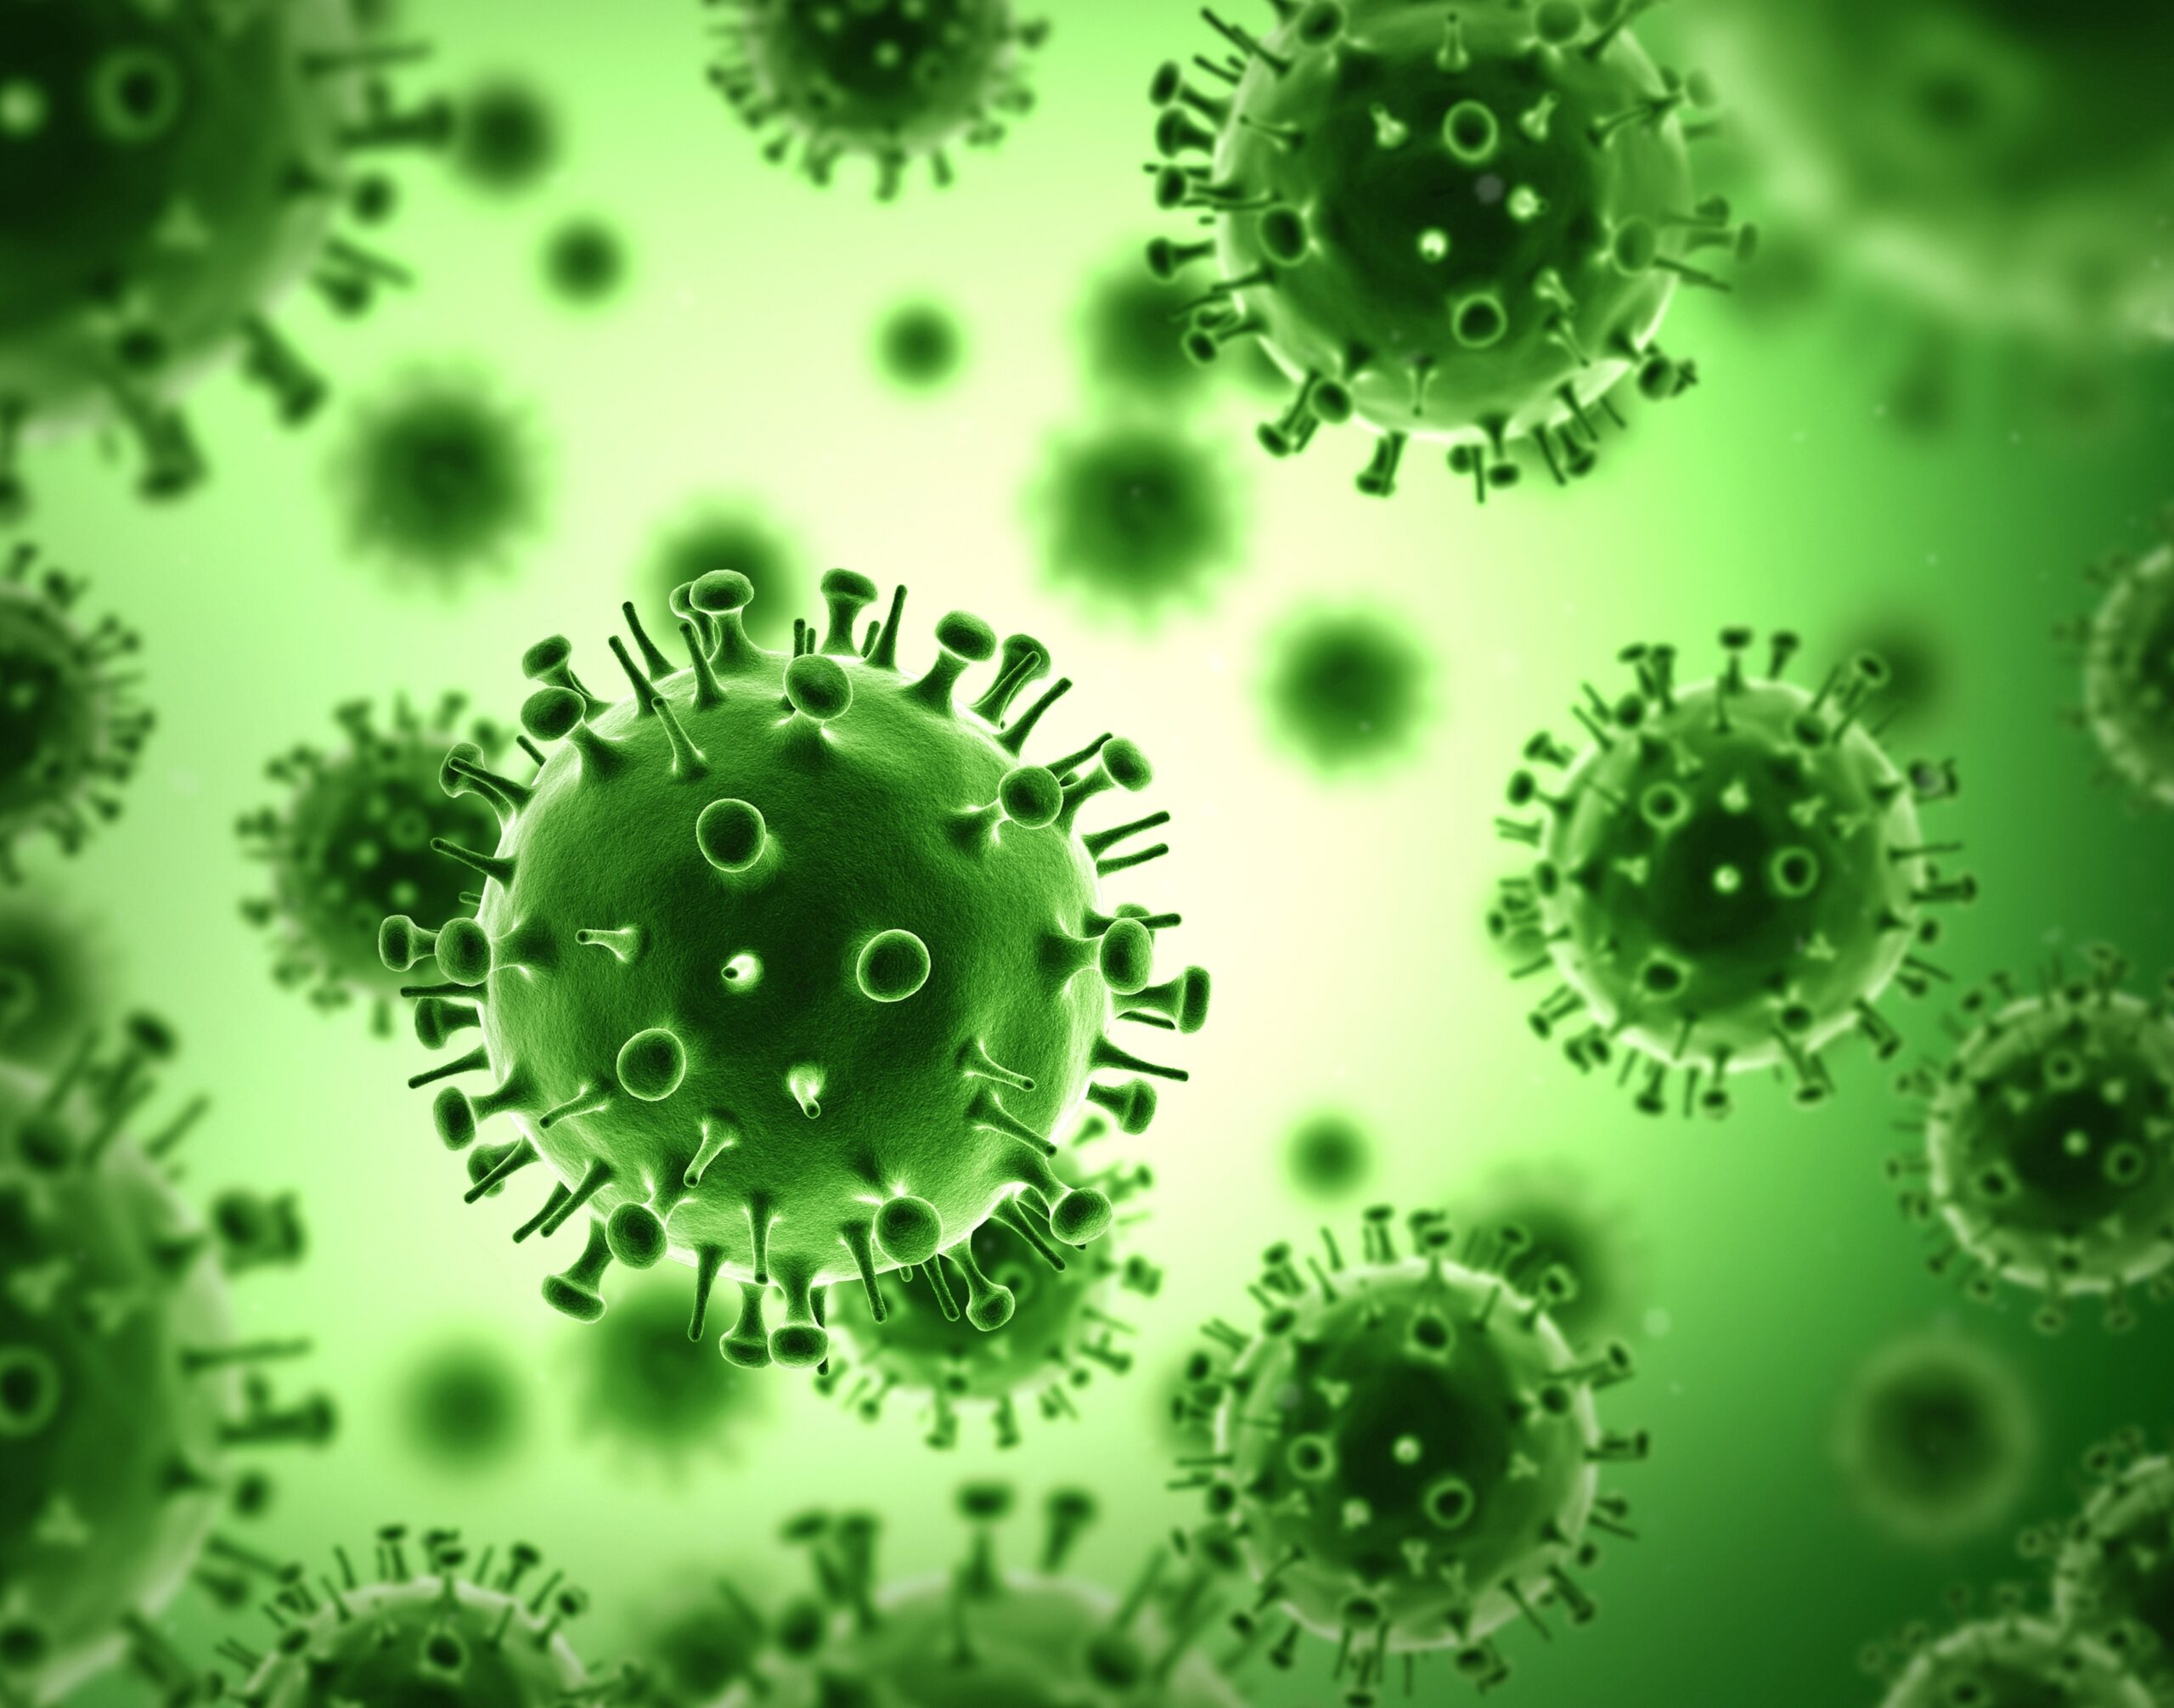 Вирус гриппа под микроскопом. Вирус простуды и гриппа под микроскопом. Вирус гриппа под микроскопом и коронавирус. Грипп и коронавирус под микроскопом. Вирусы гриппа d